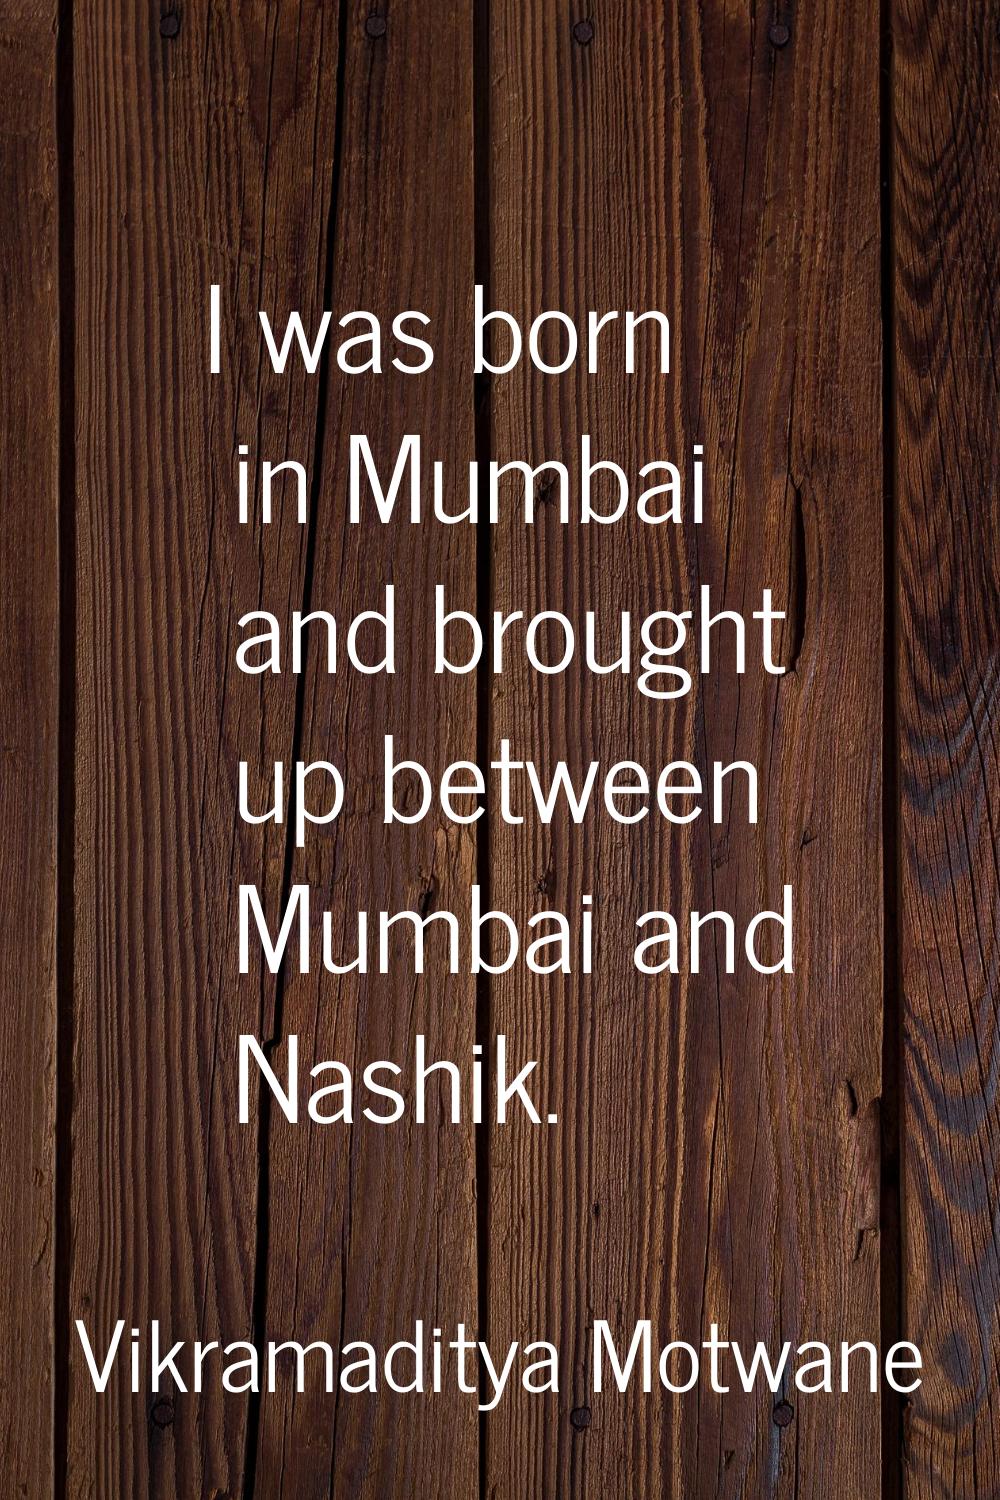 I was born in Mumbai and brought up between Mumbai and Nashik.